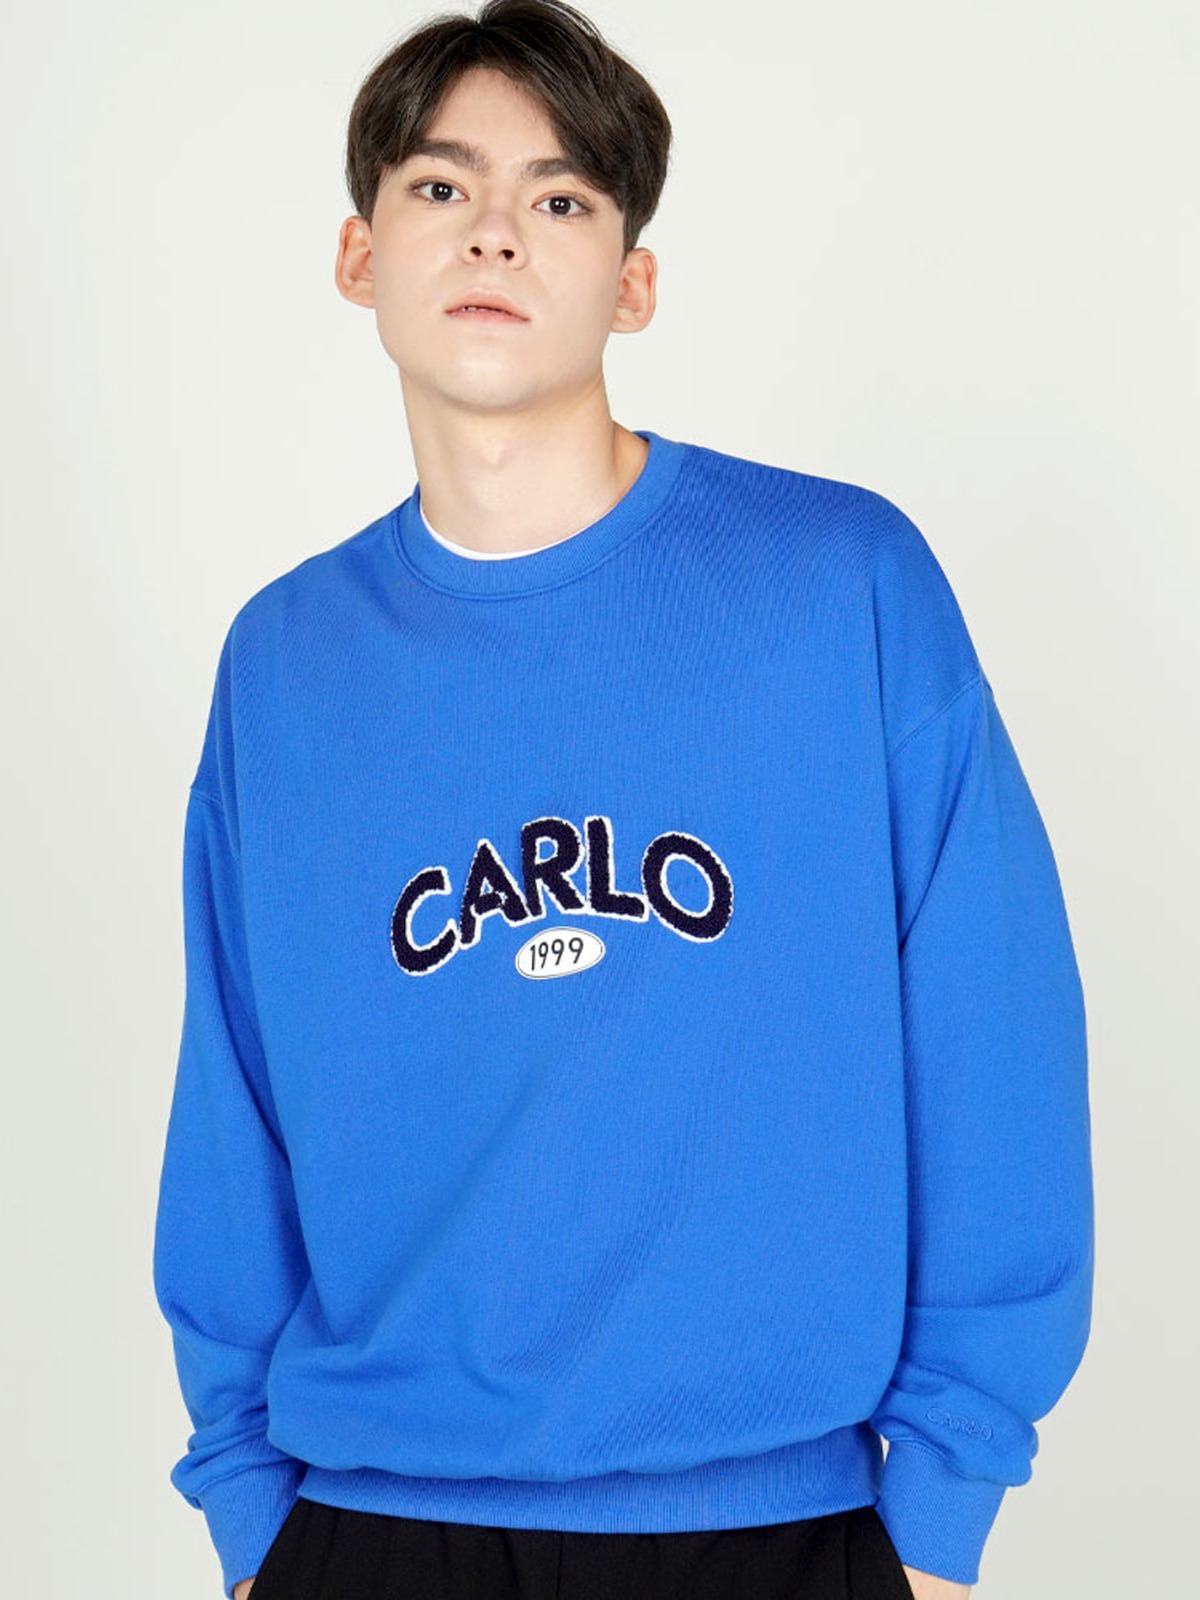 arch CARLO 1999 Sweatshirts Blue